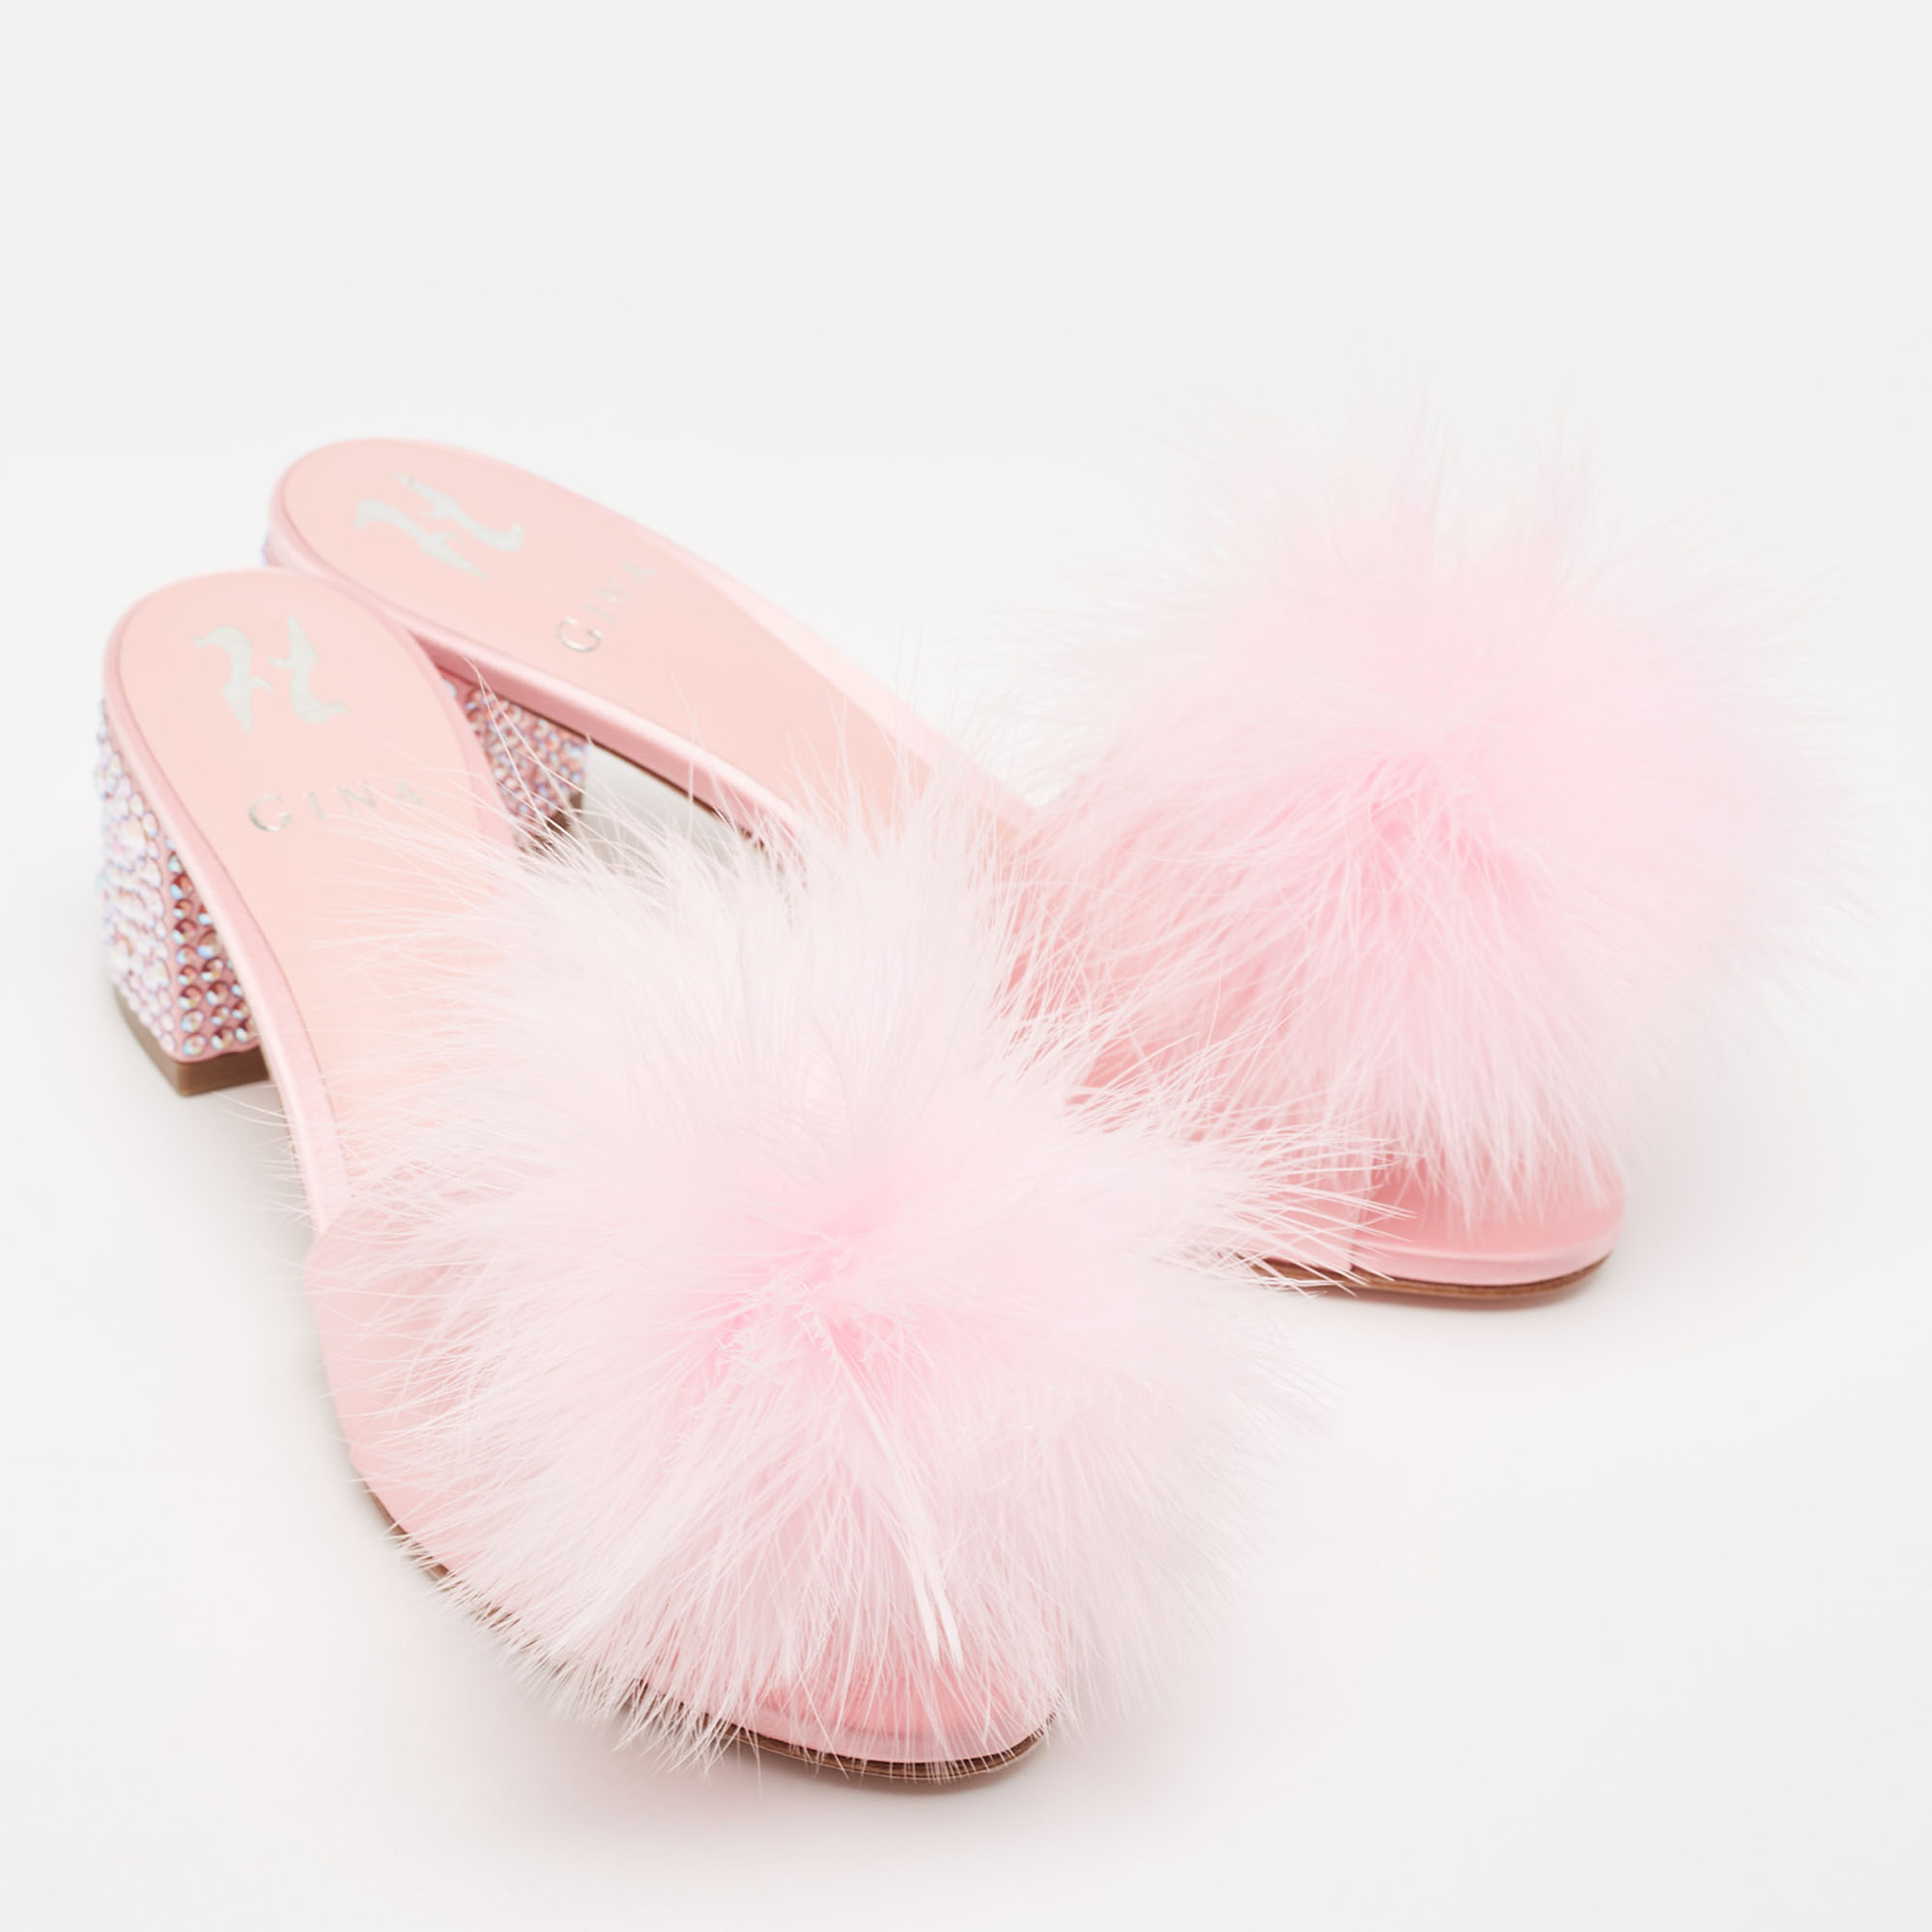 Gina Pink Satin And Fur Cindy Crystal Embellished Heel Slide Sandals Size 39